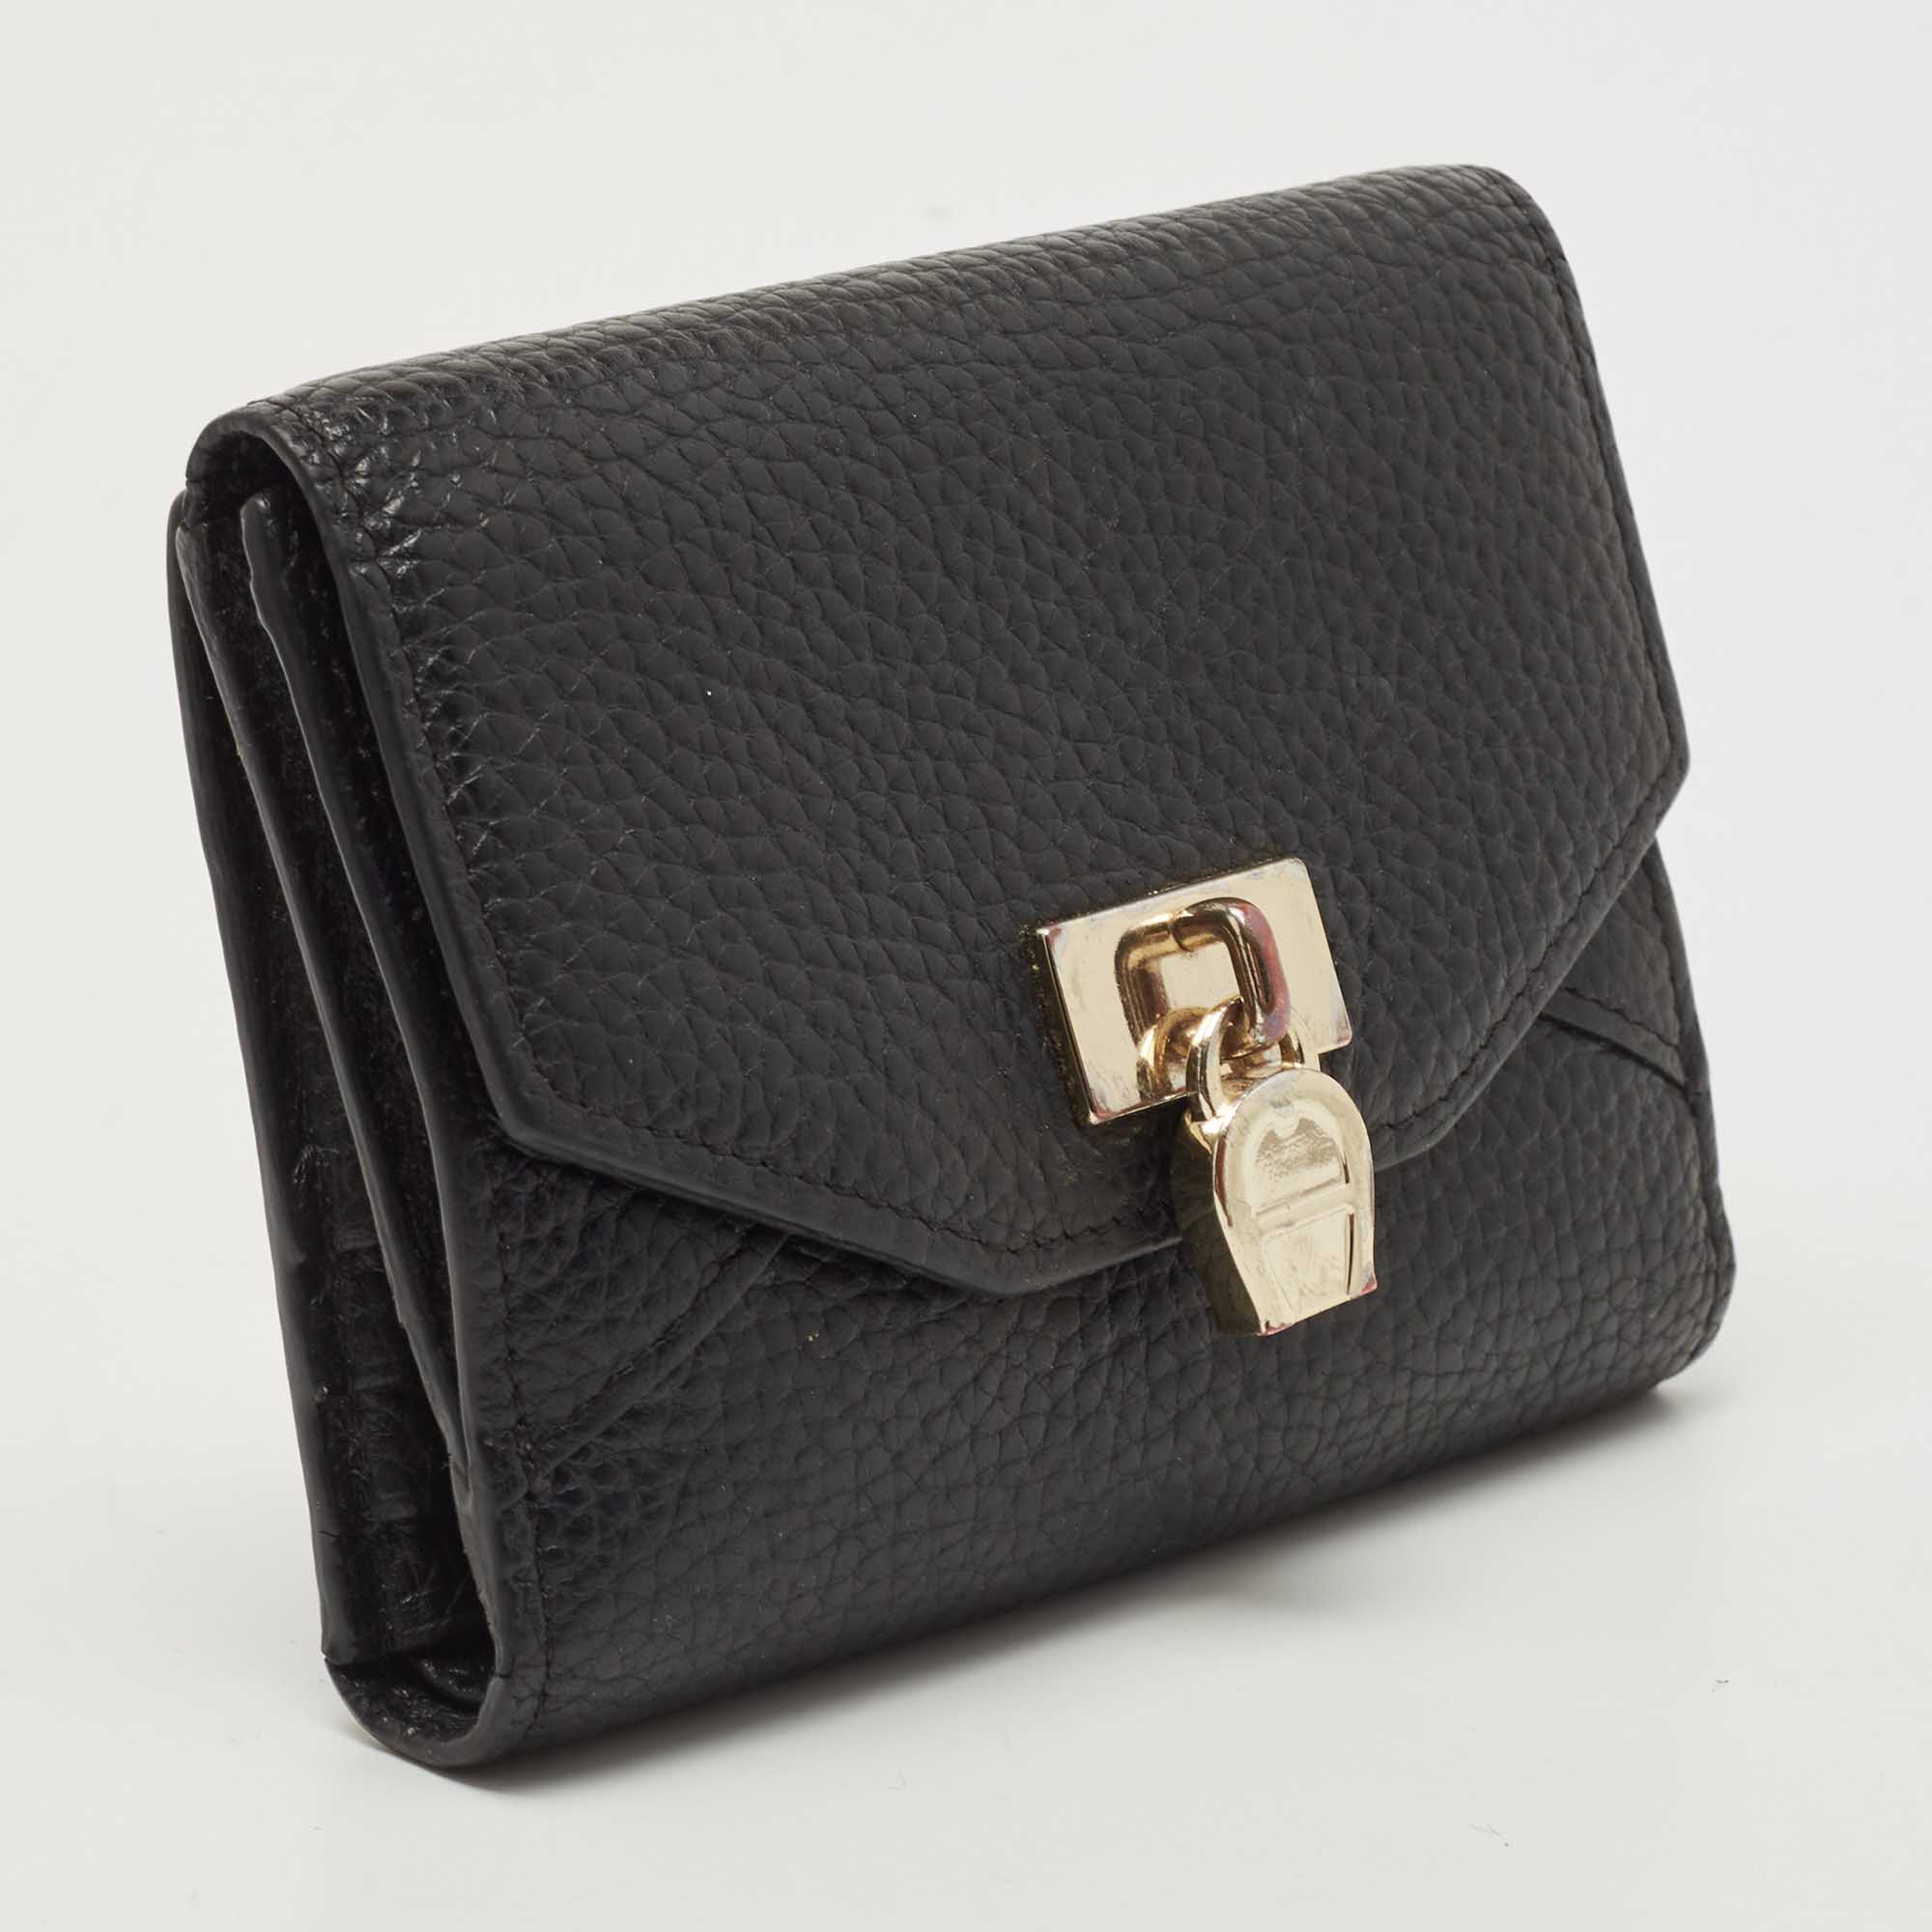 Aigner Black Leather Envelope Flap Compact Wallet